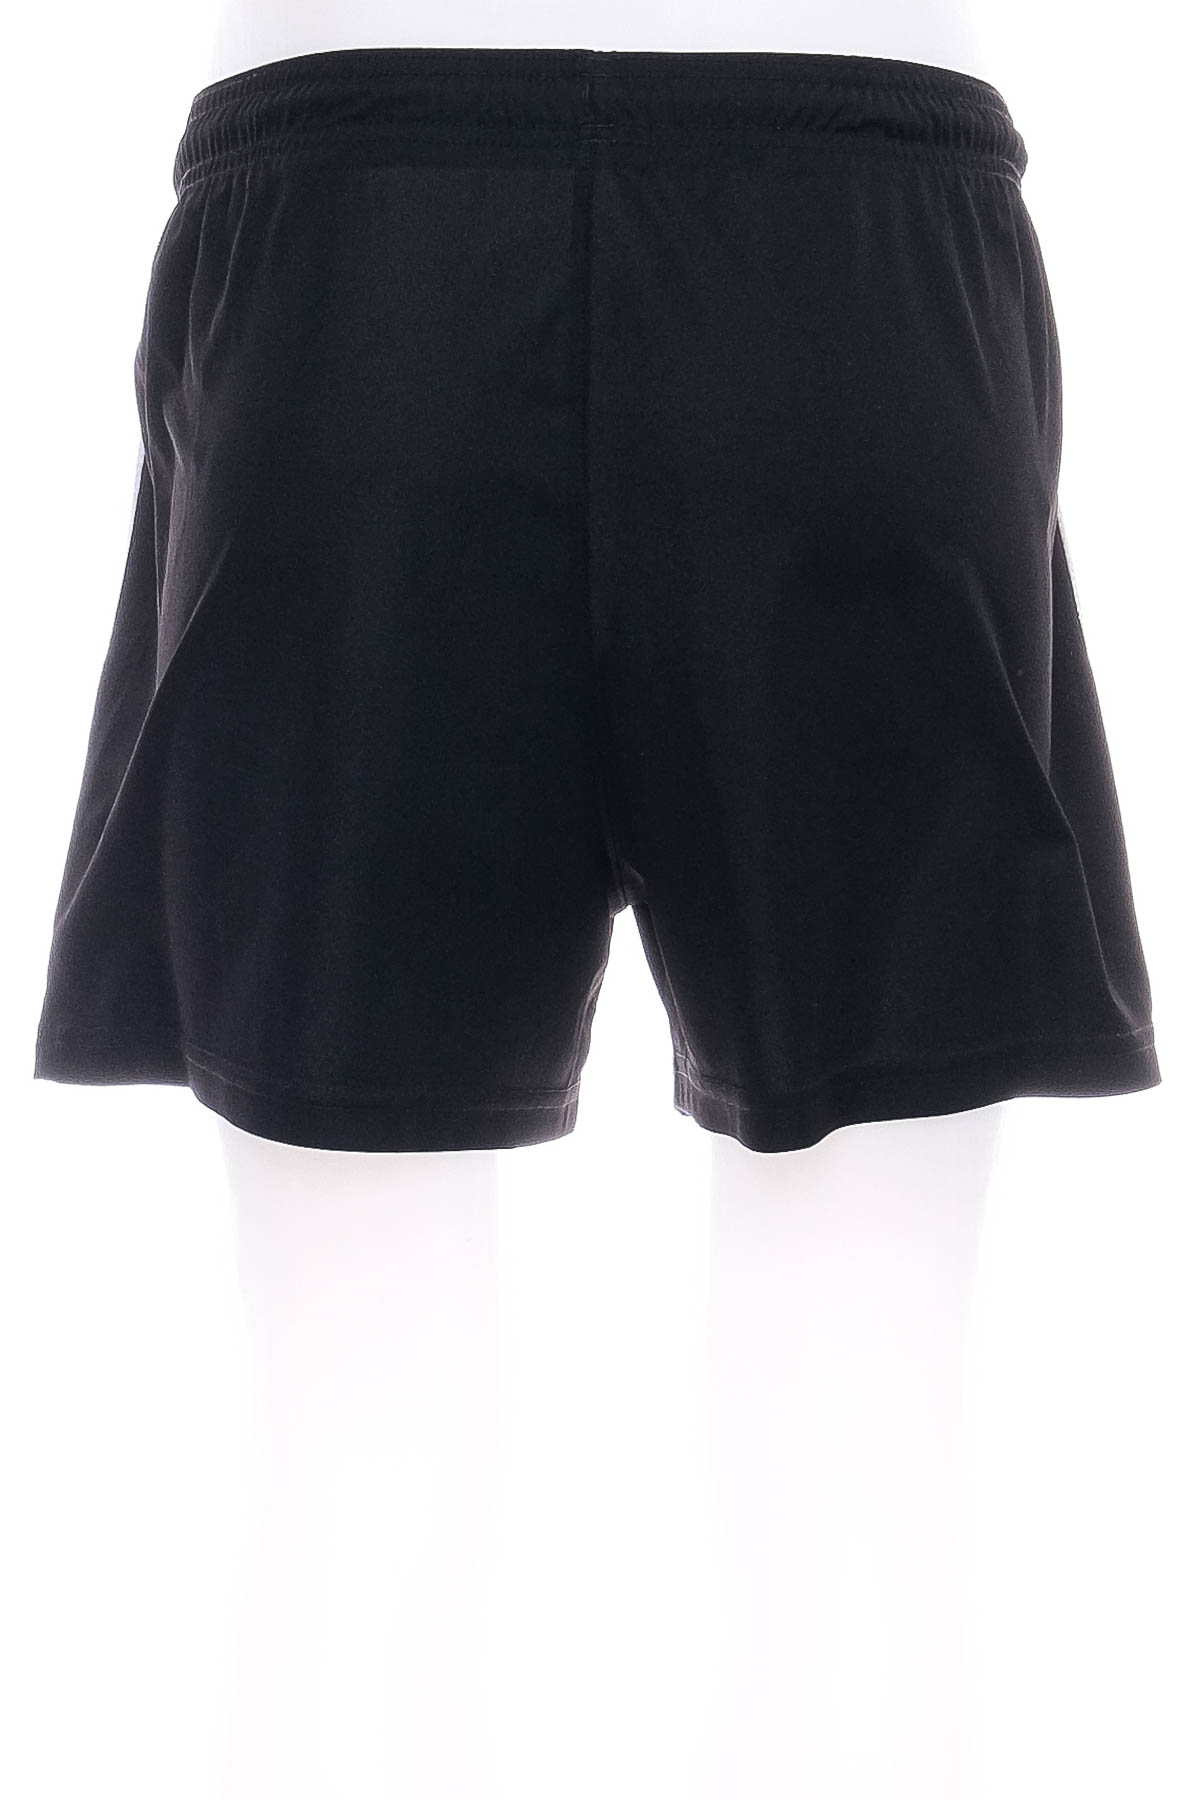 Men's shorts - Puma - 1